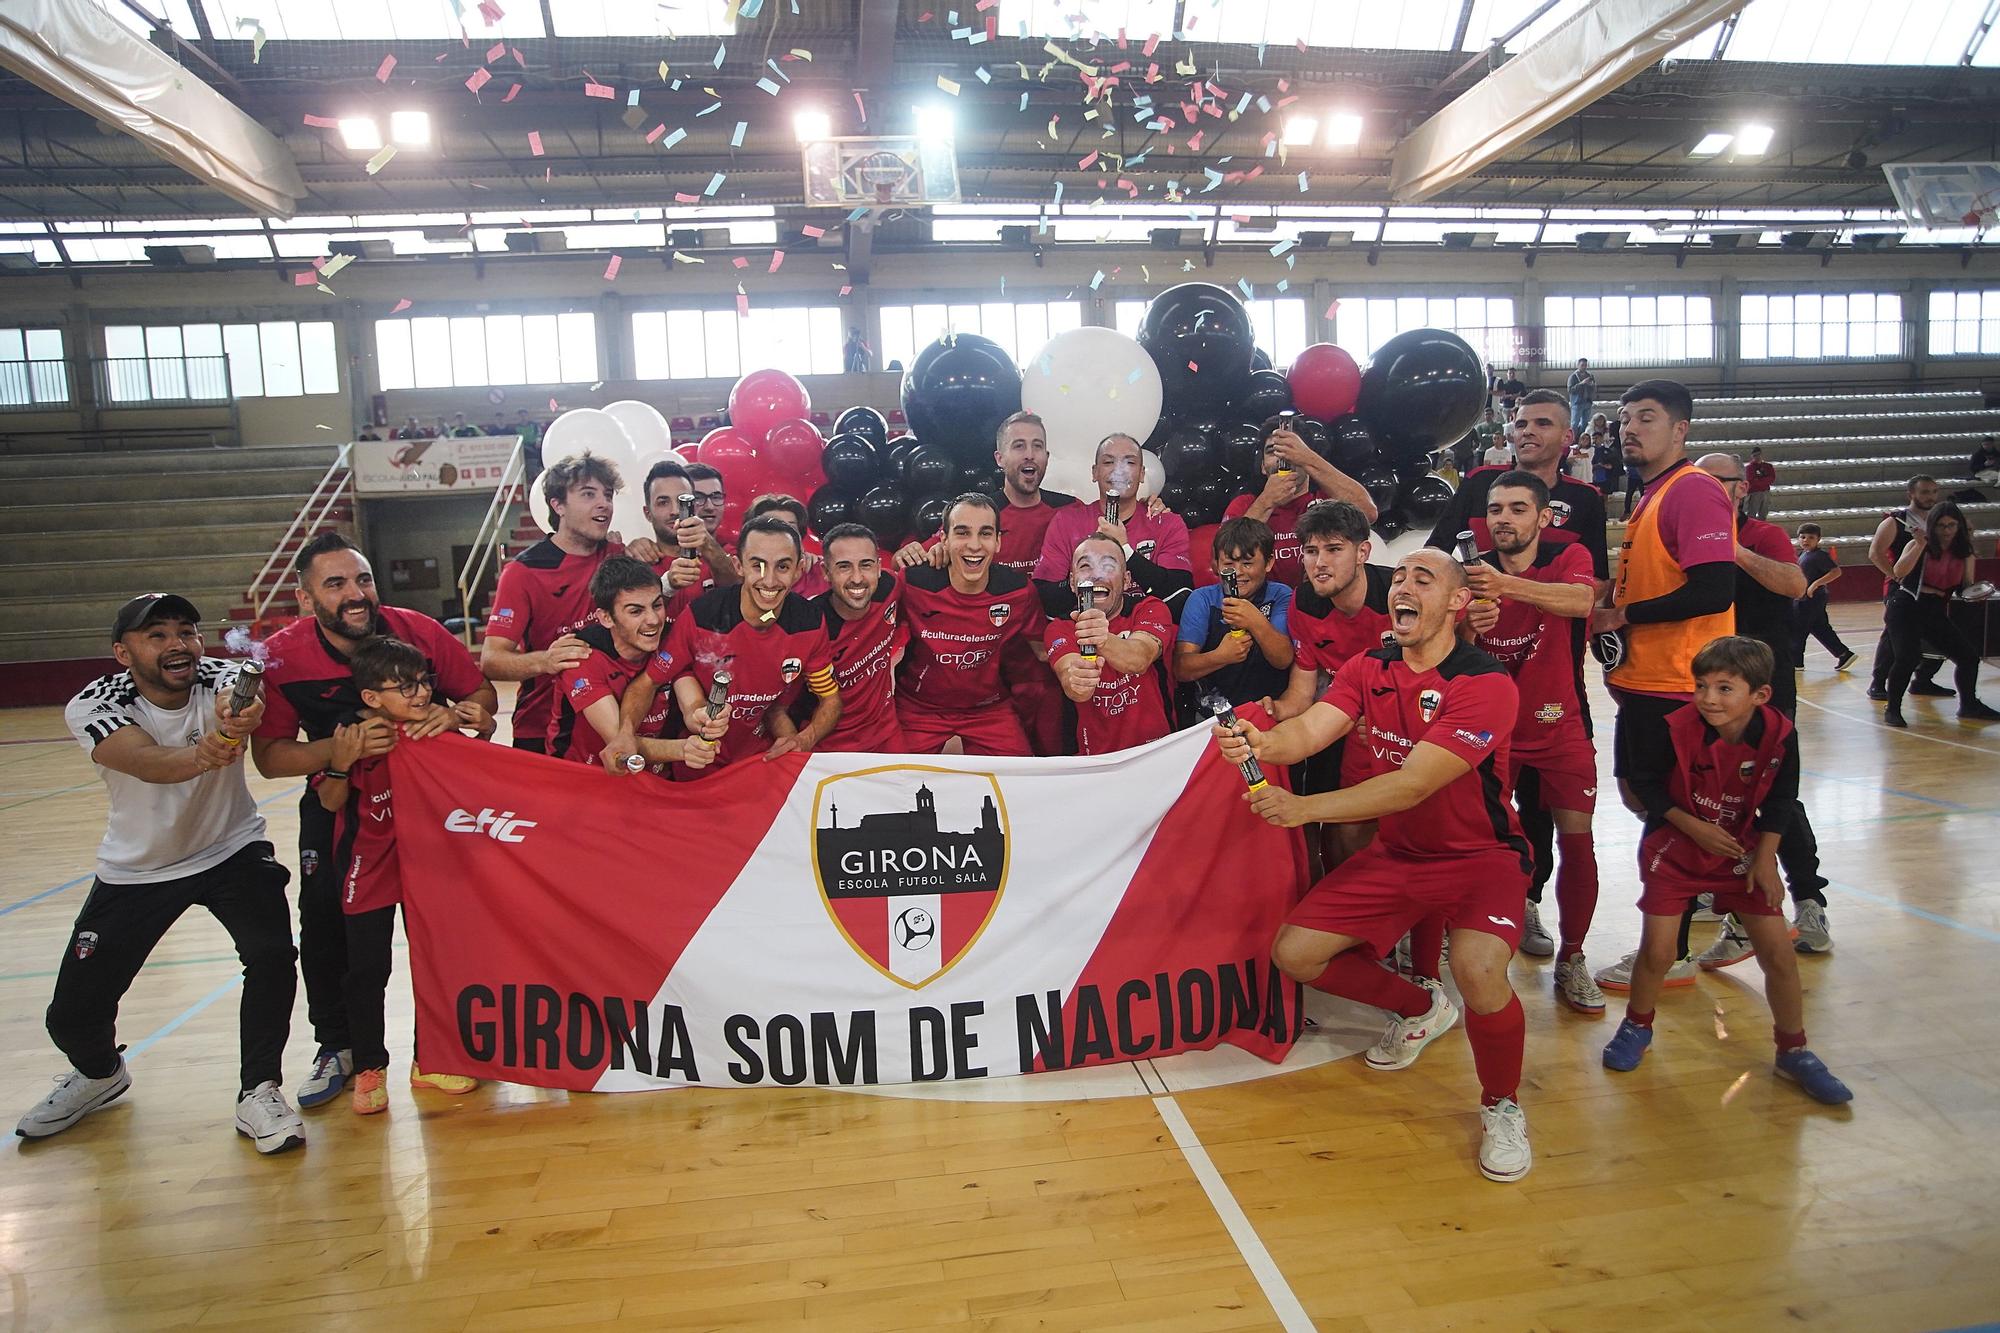 Les millors imatges de l'ascens del Girona Escola de Futbol Sala